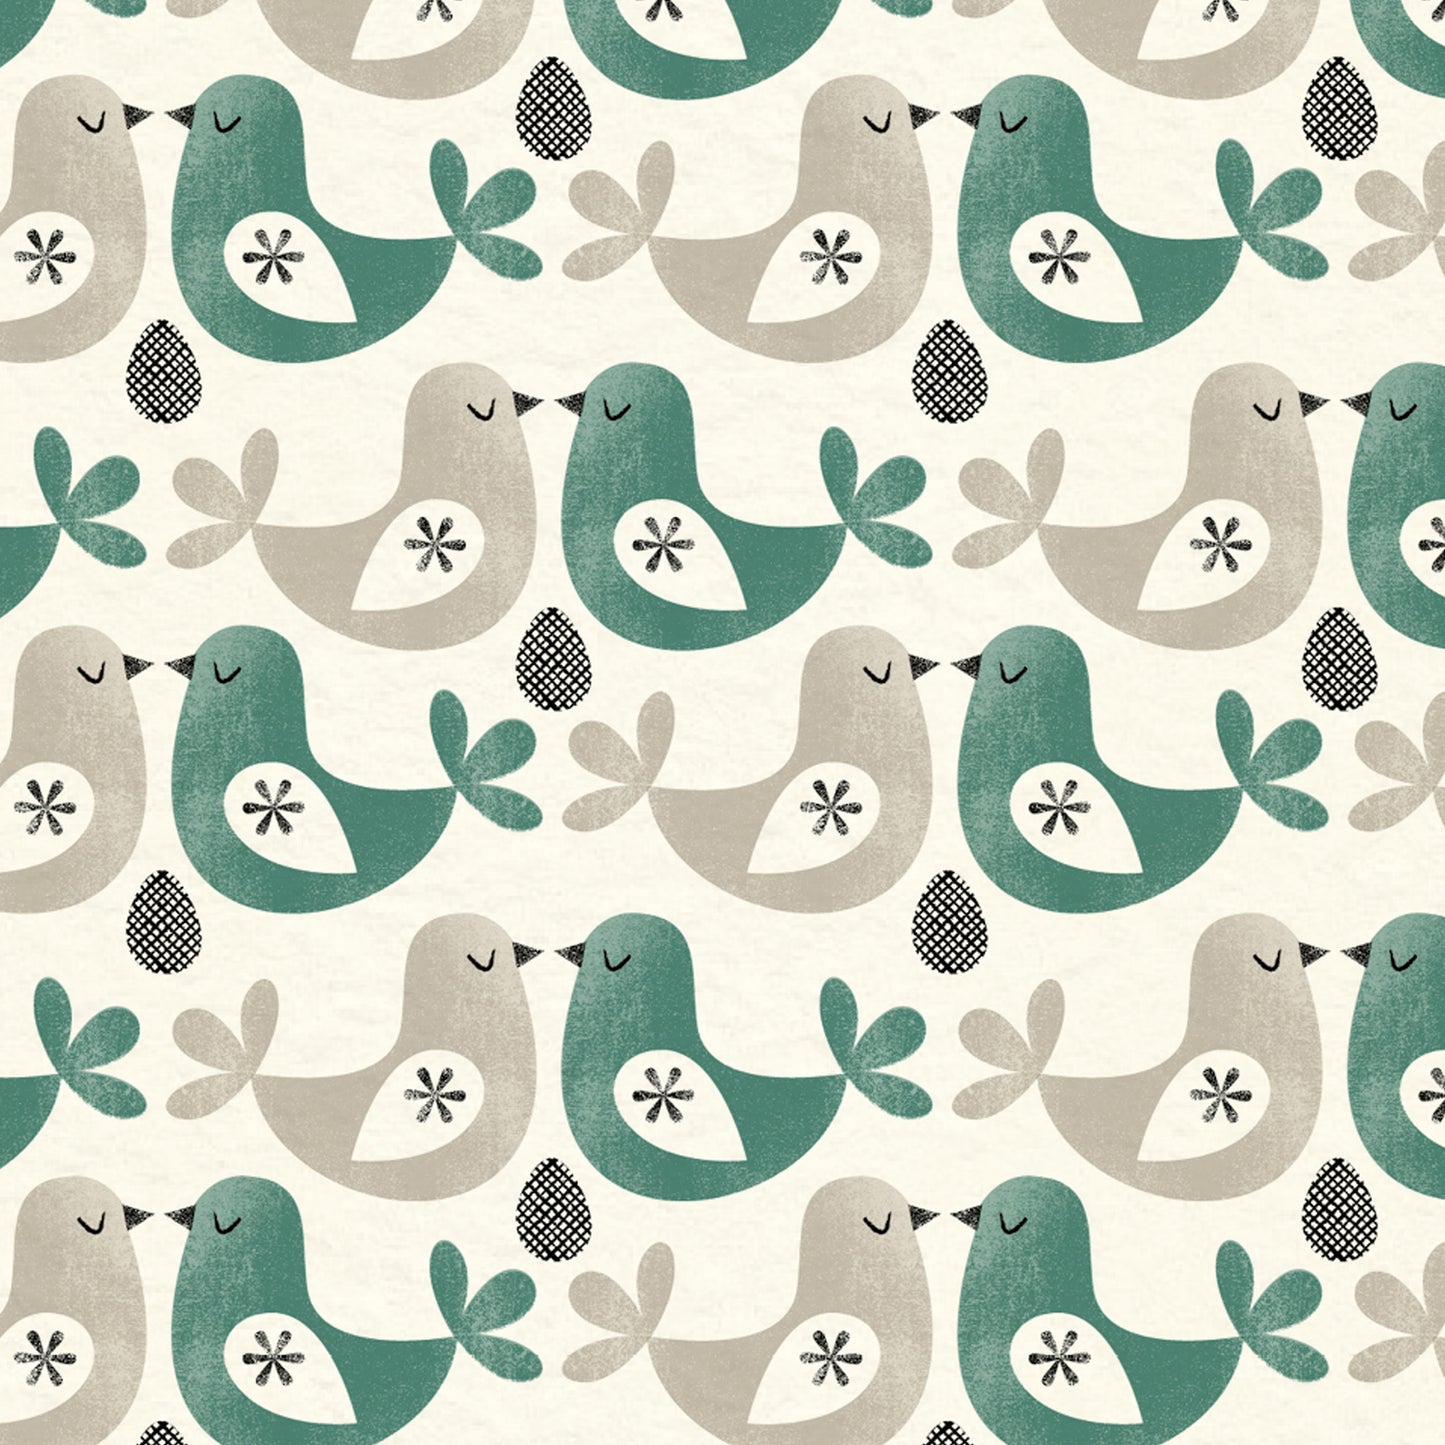 Just Patterns: Folk Birds